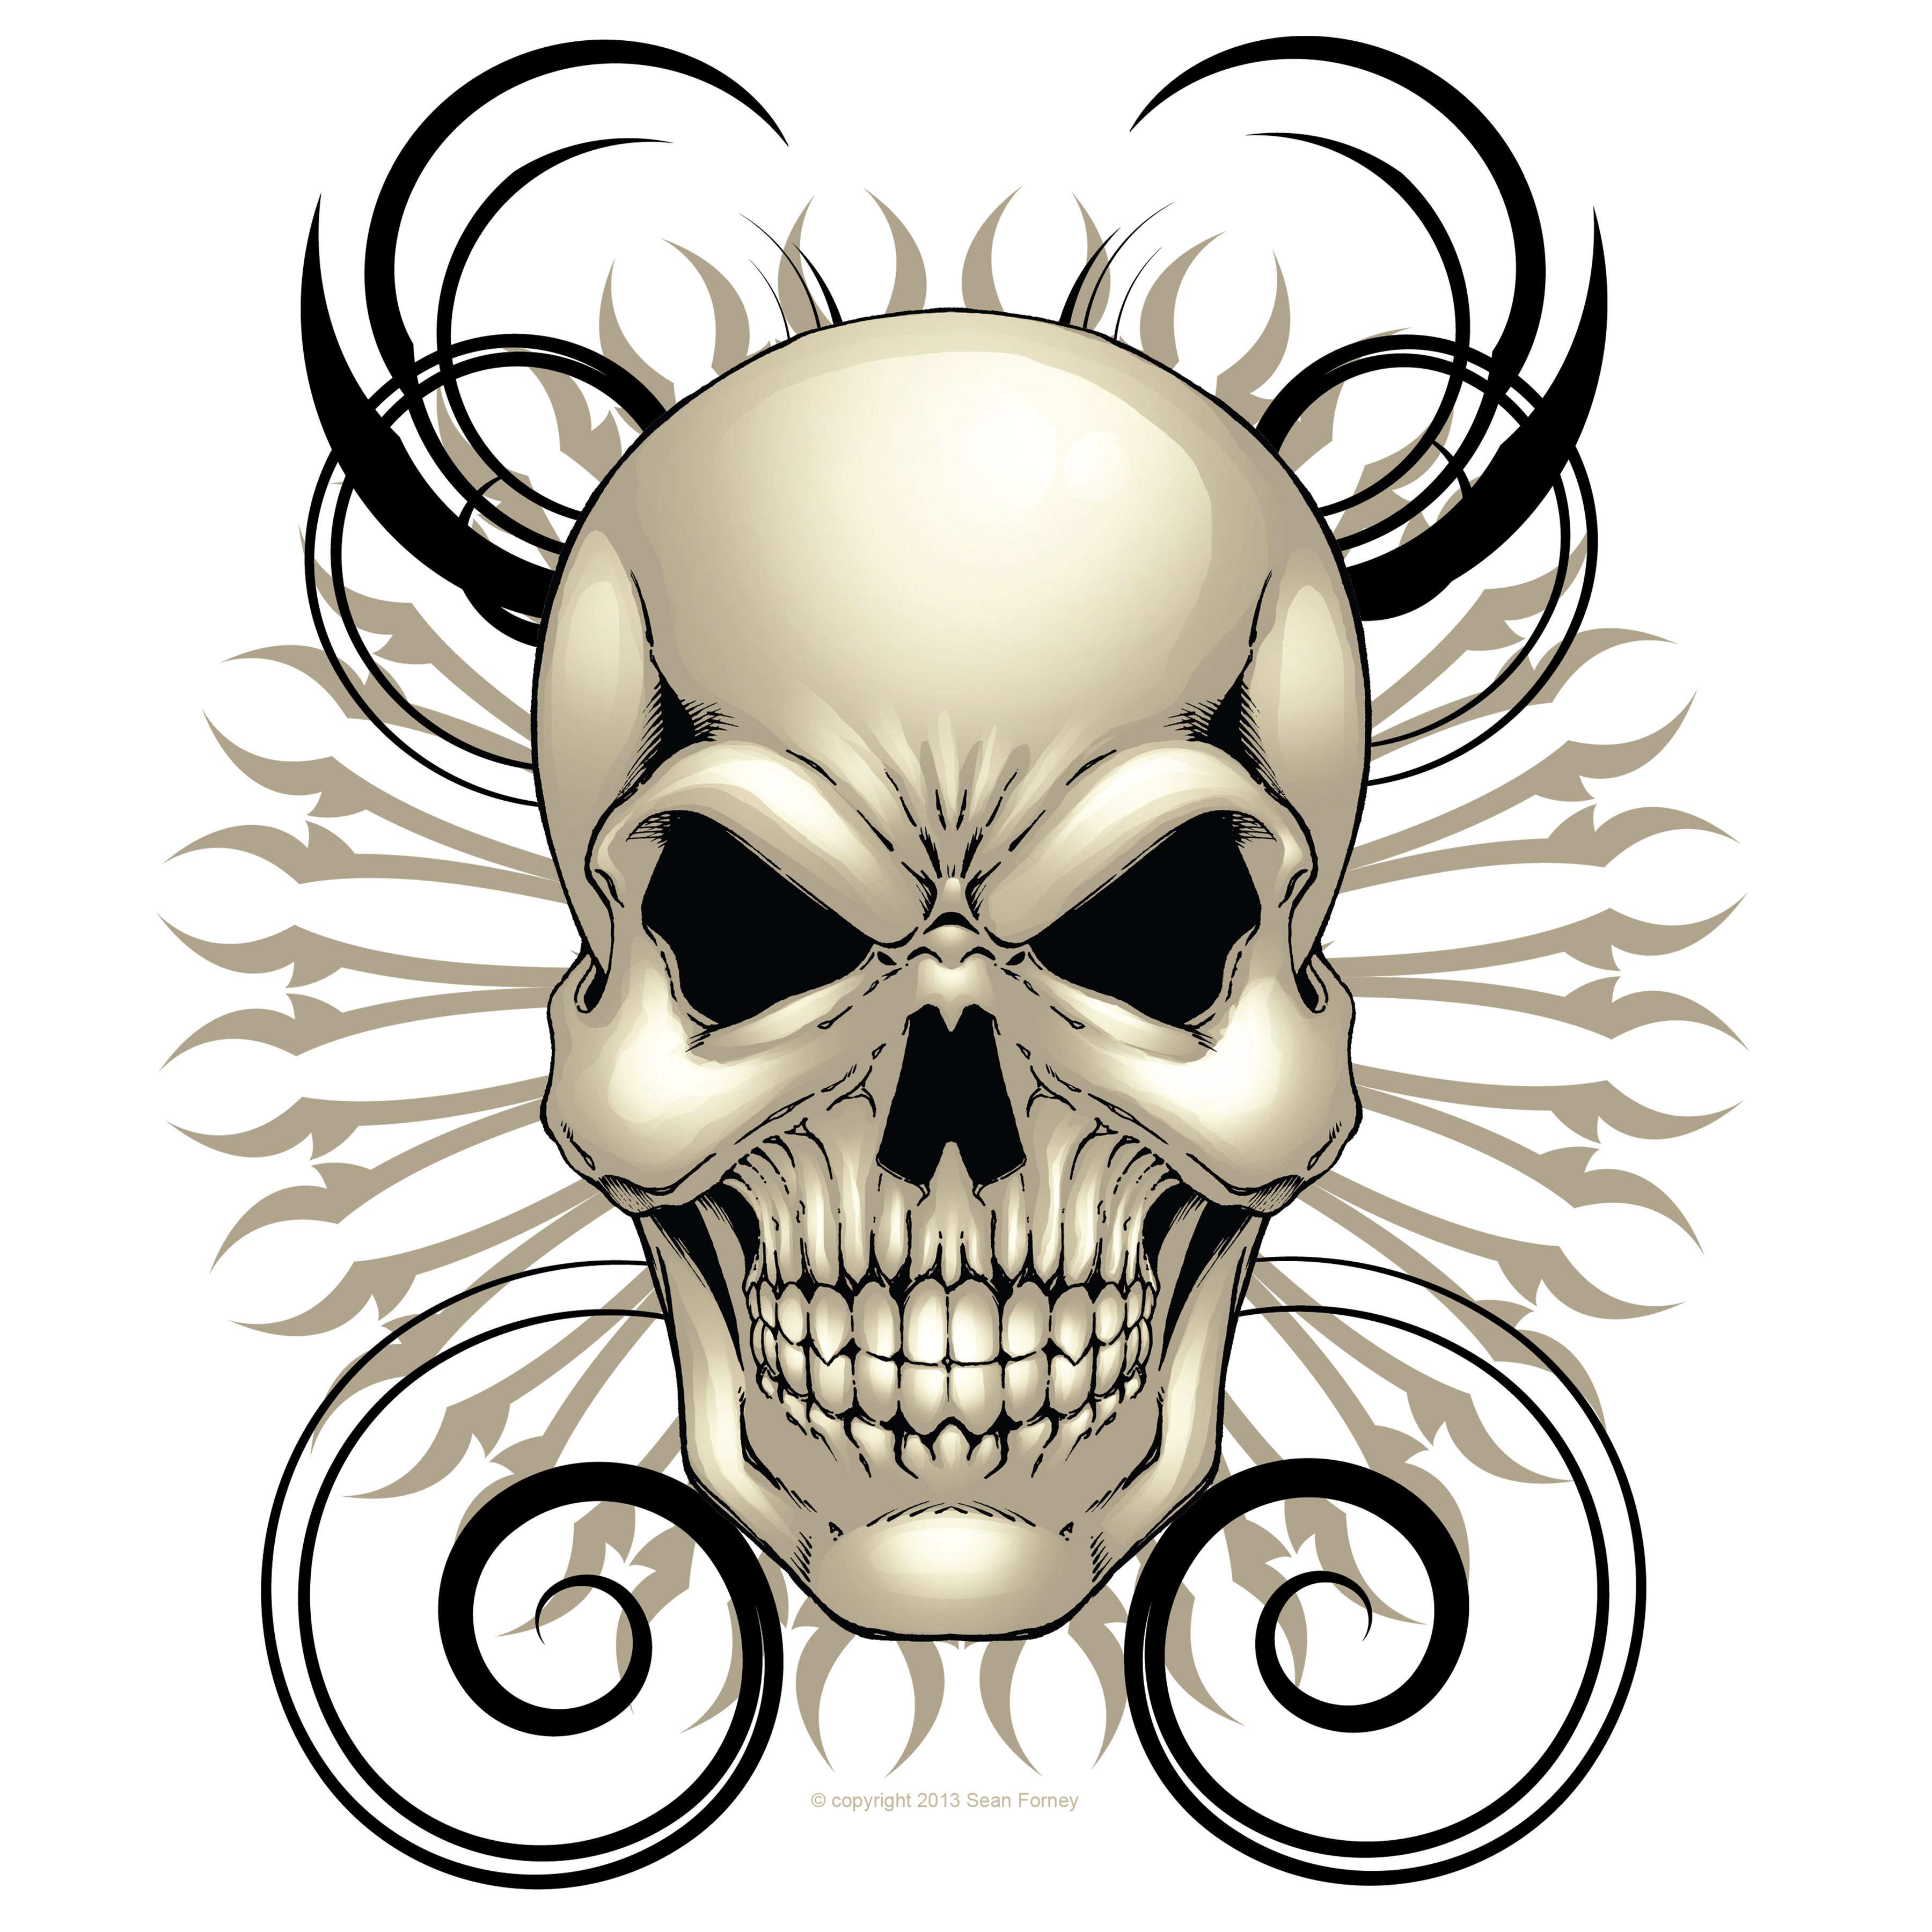 Skull Design 12 x 12 � Sean Forney � Online Store Powered by Storenvy. Skull artwork, Skull, Skeleton art